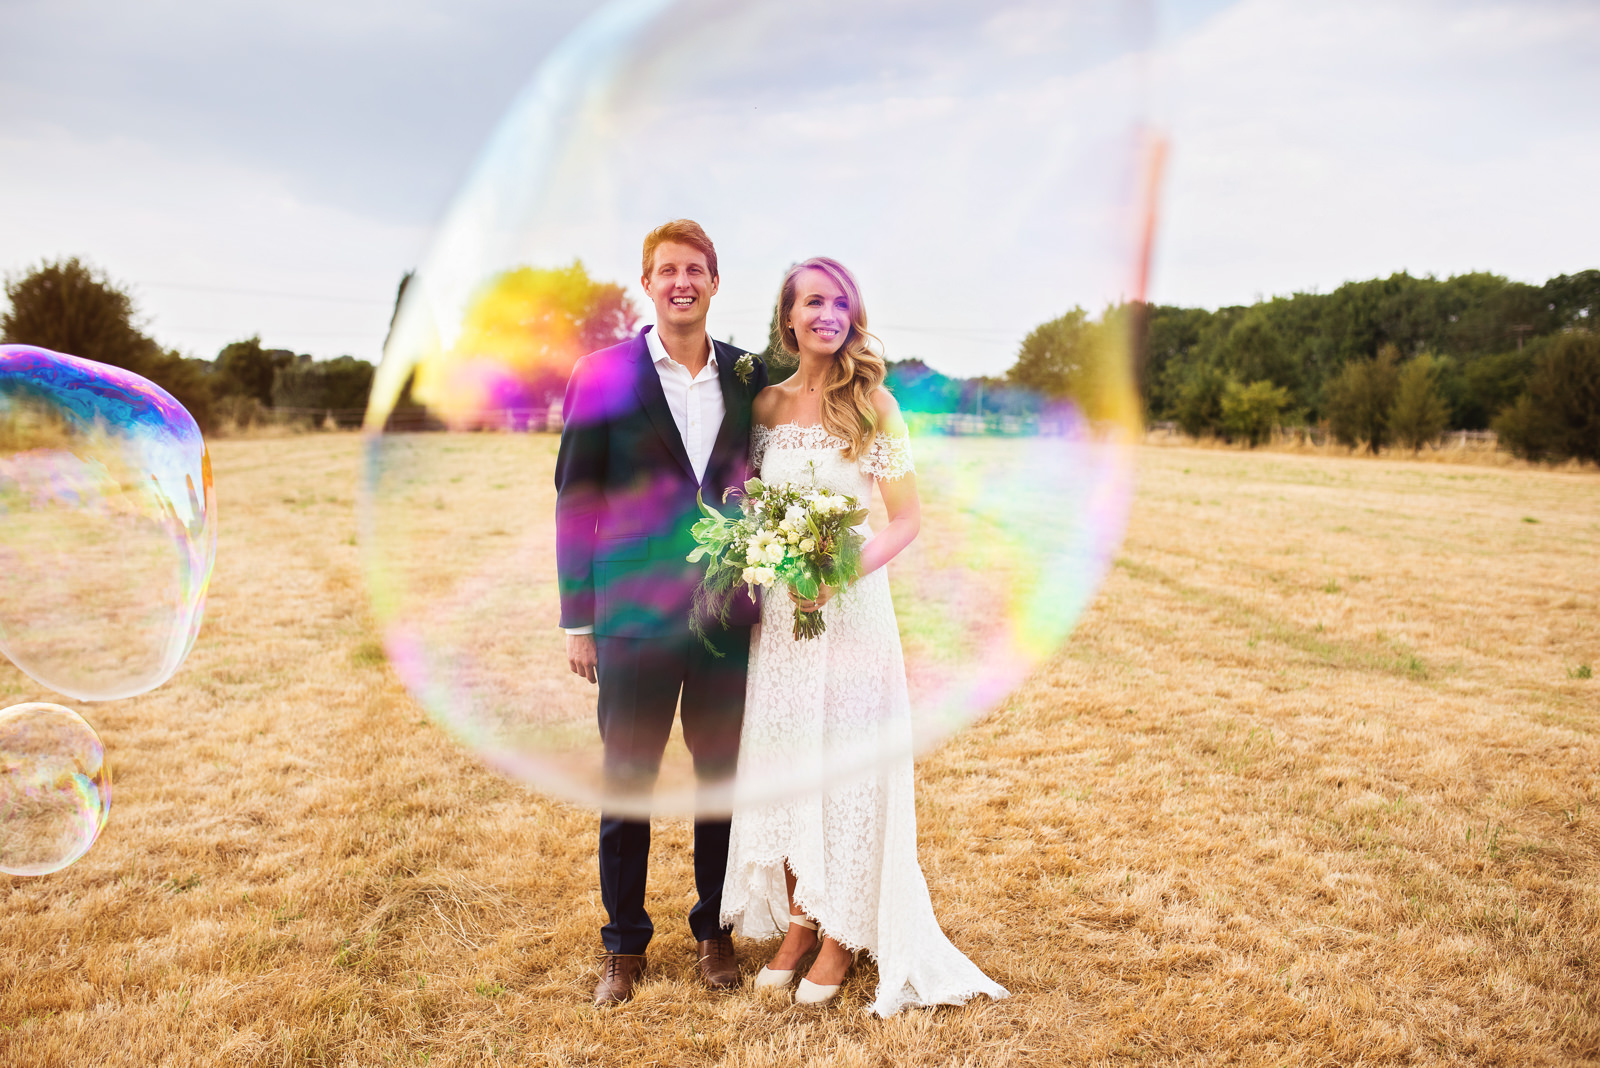 Giant bubbles wedding photos